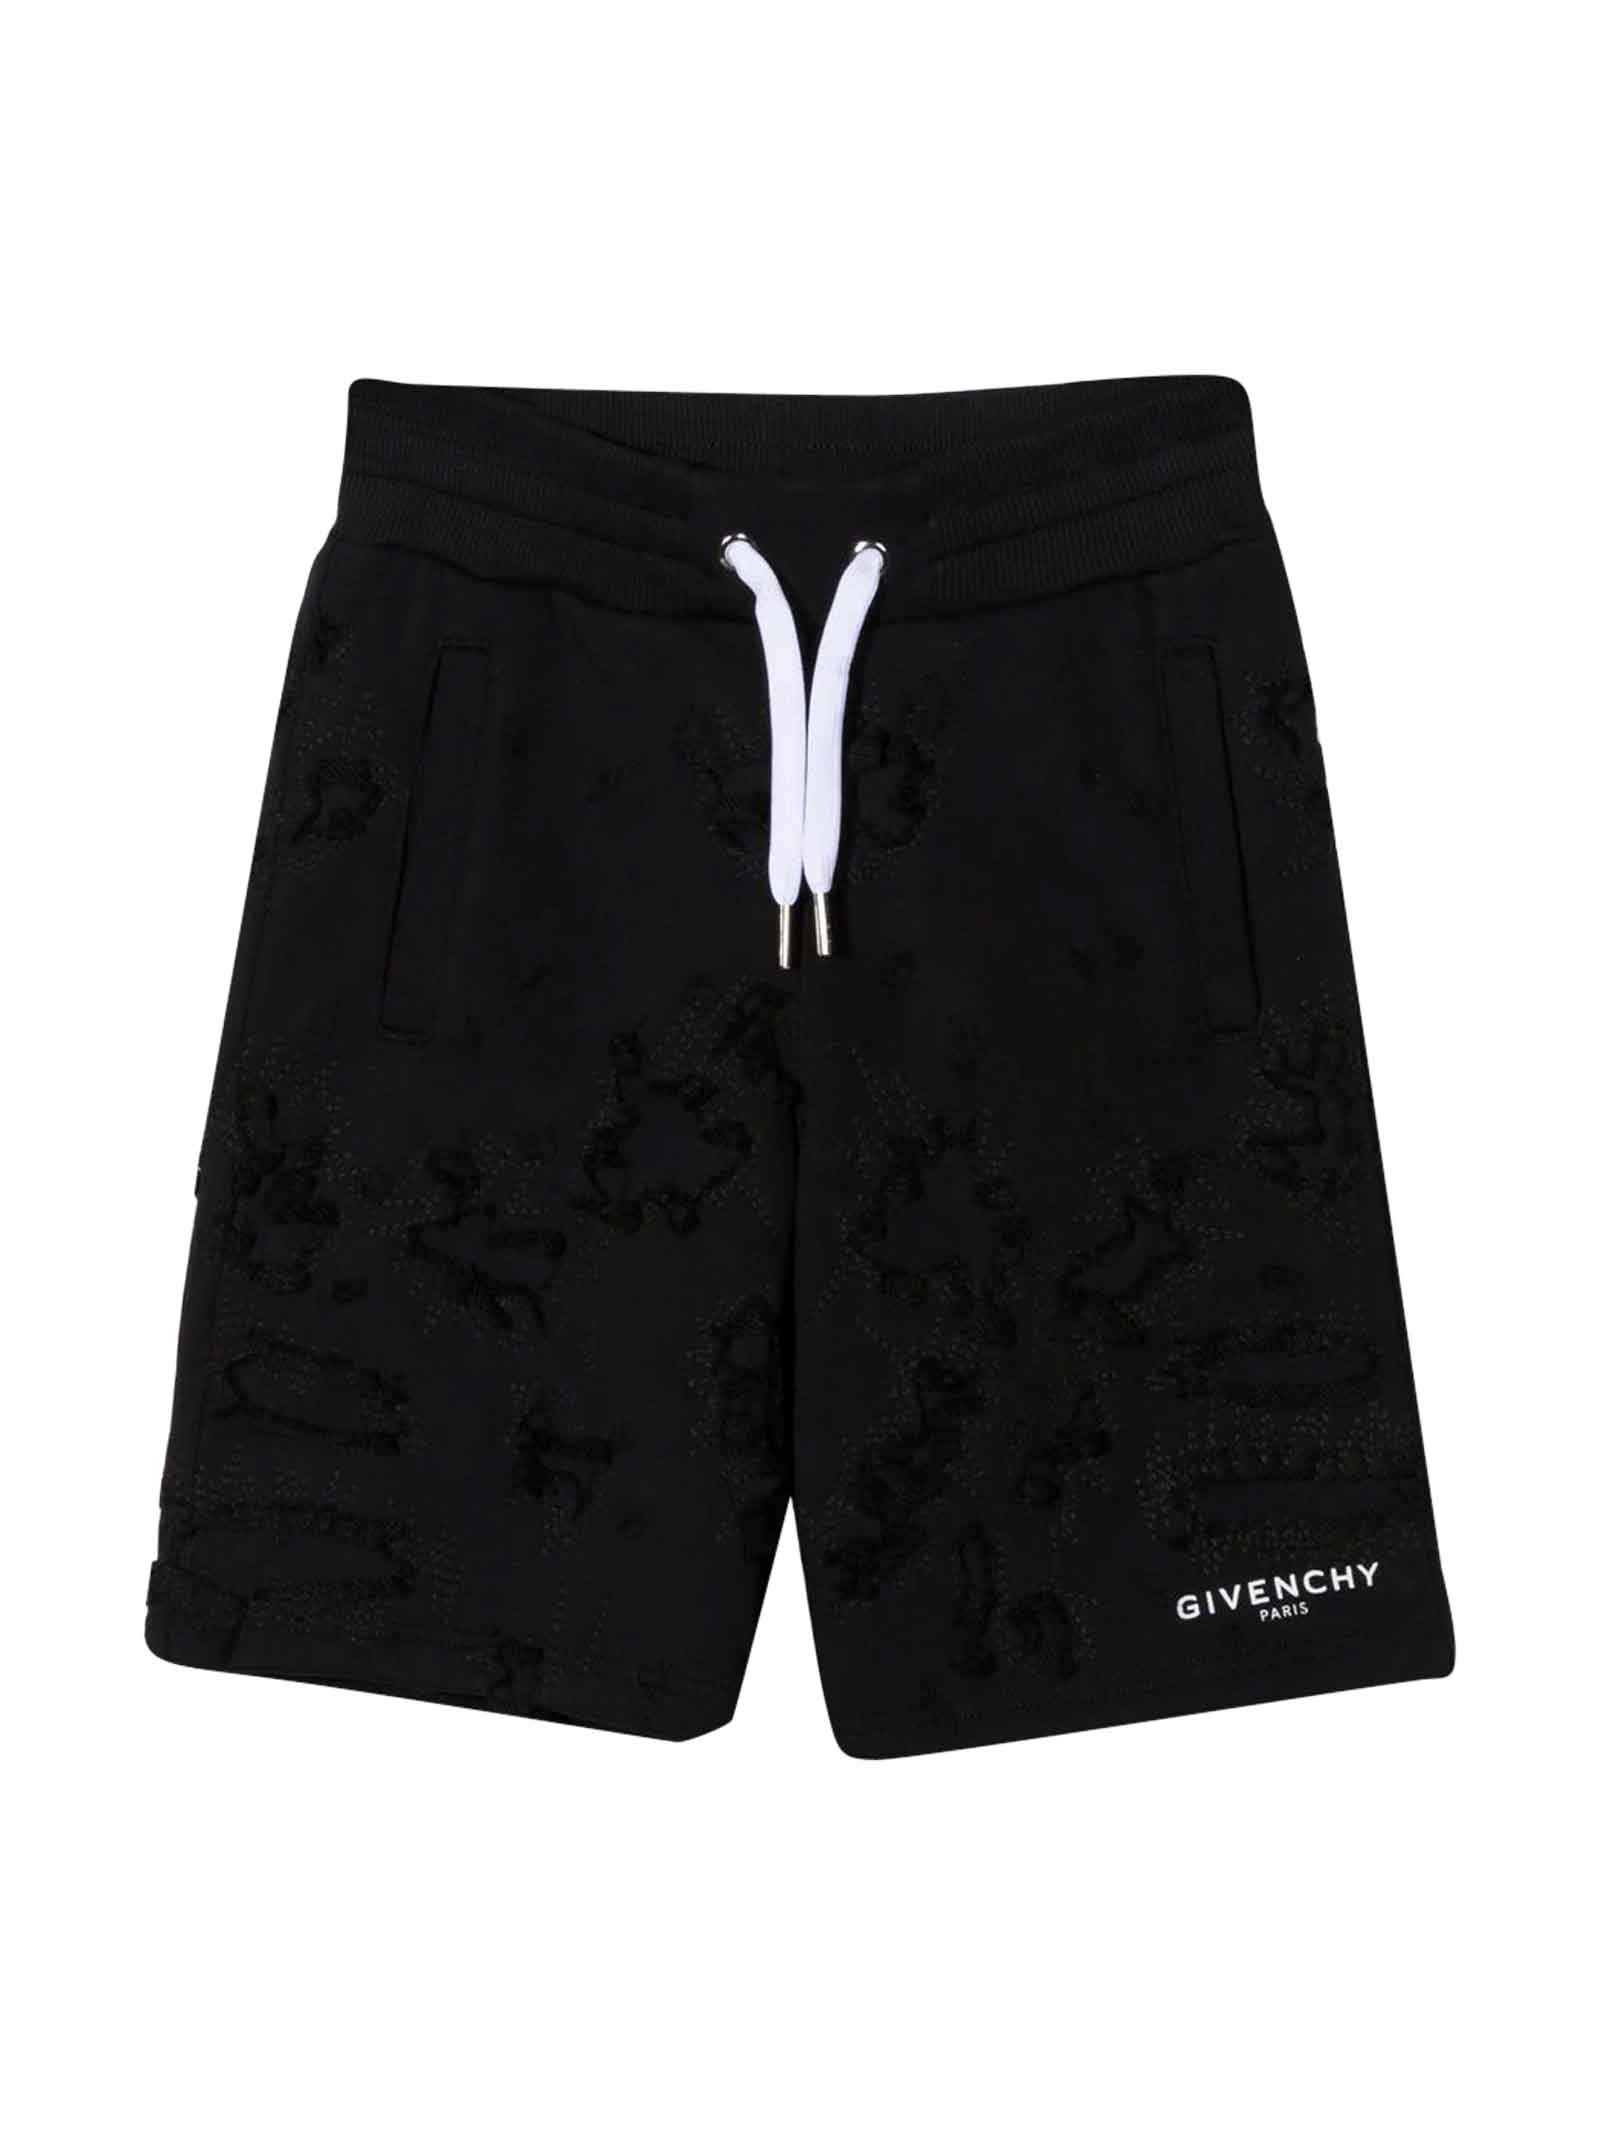 Givenchy Unisex Black Bermuda Shorts